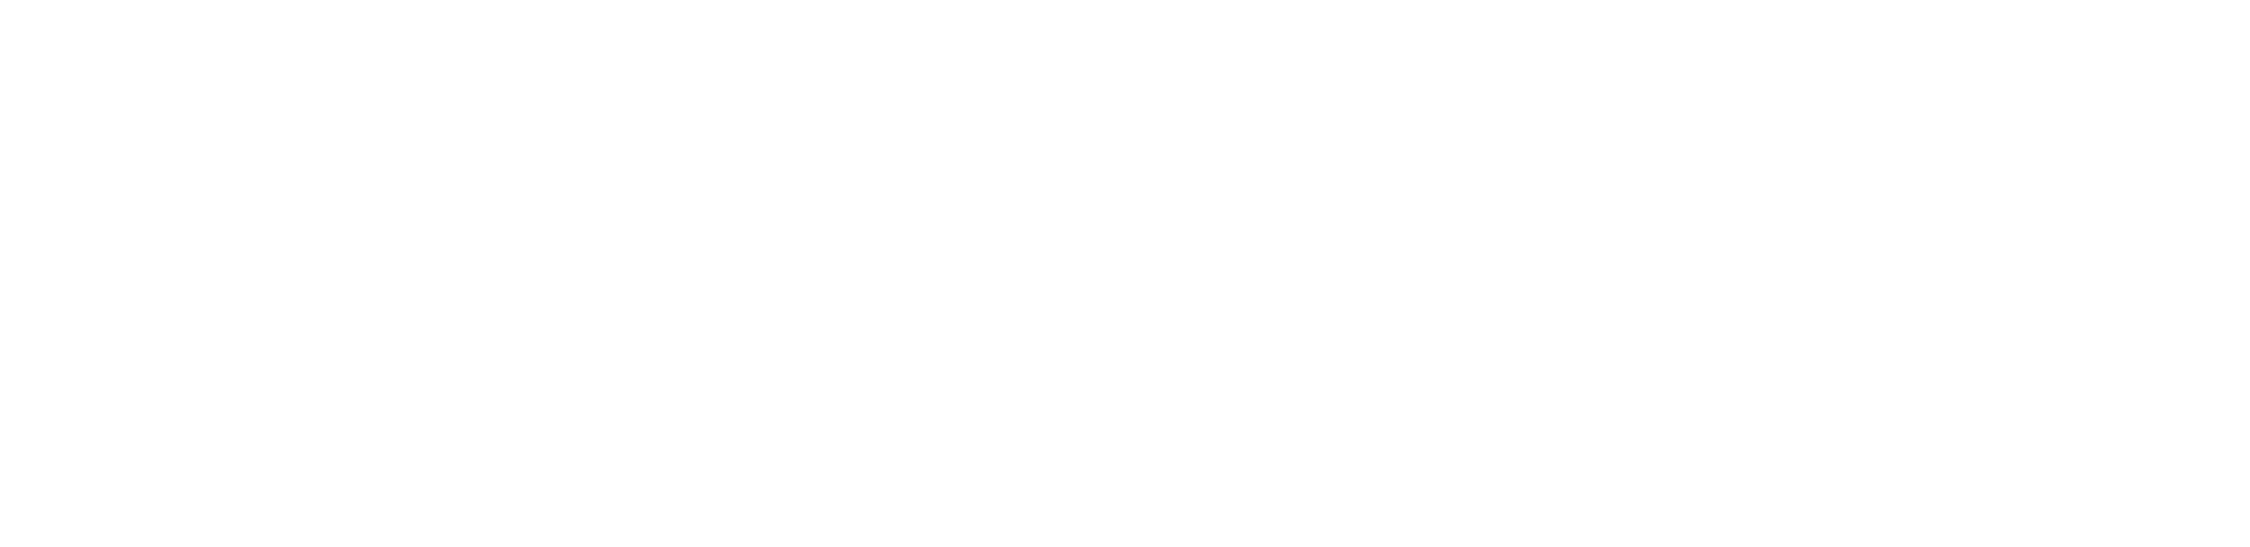 Aqua Paradise